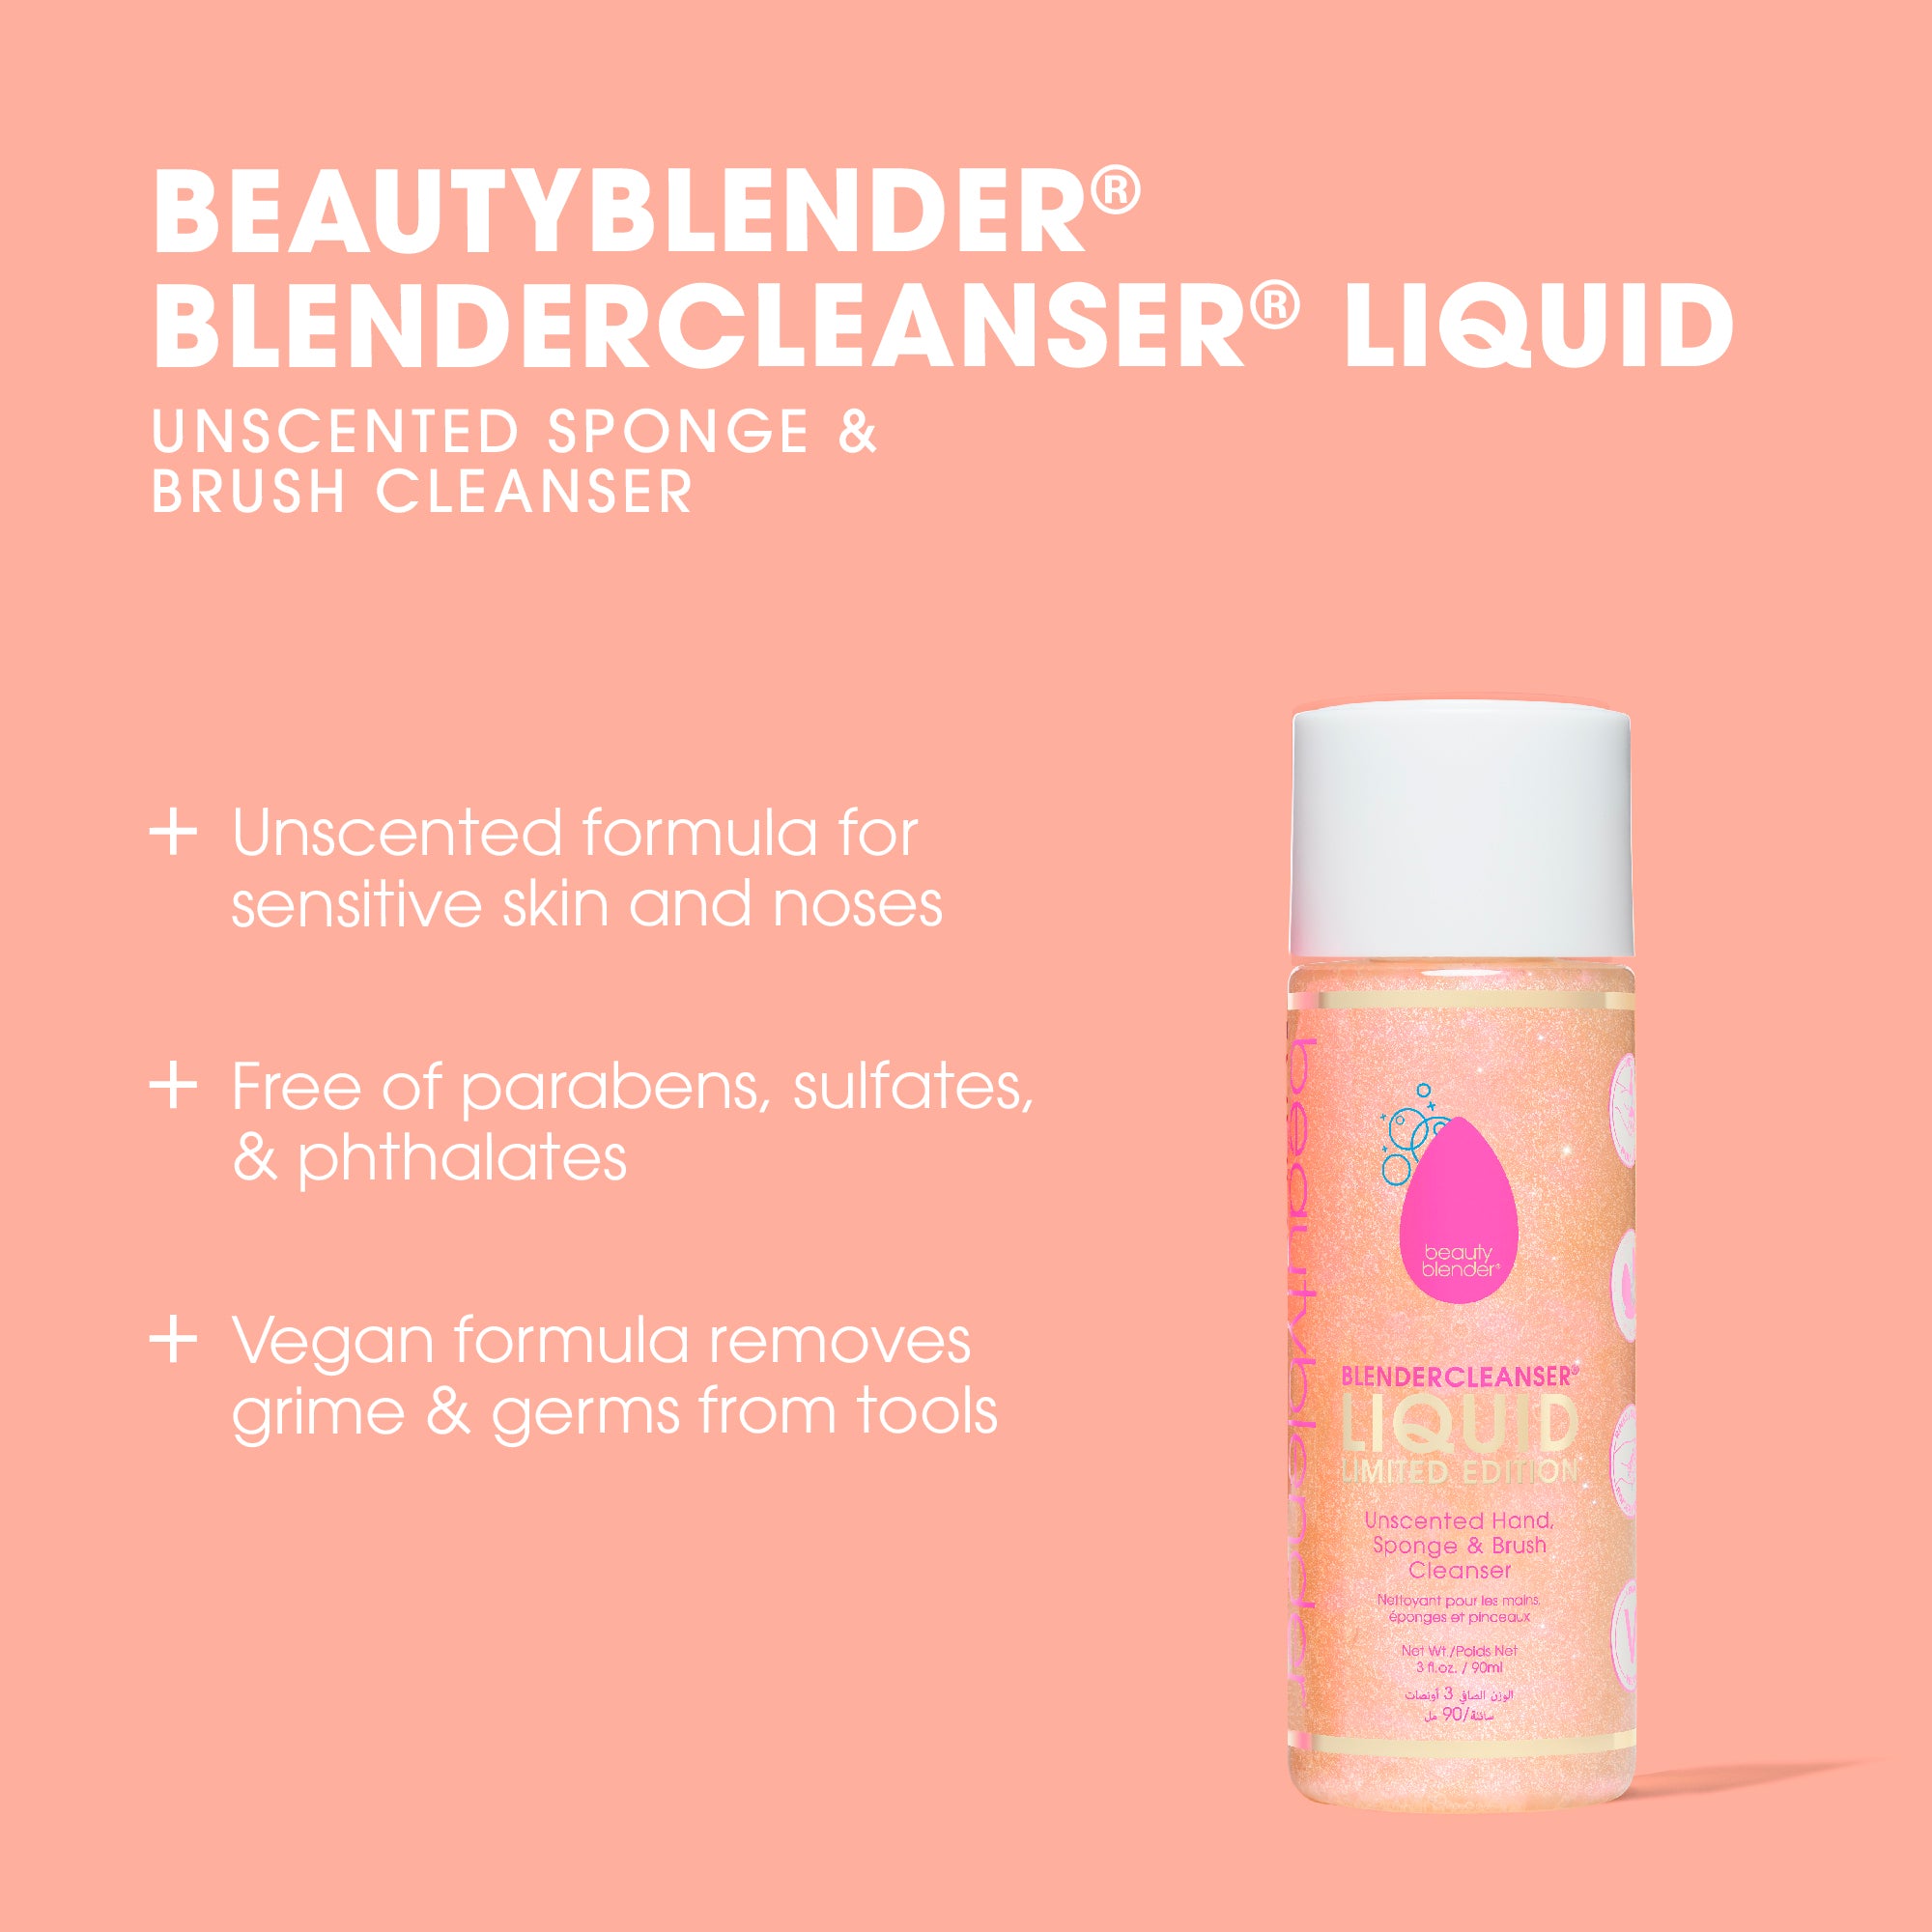 Blendercleanser® Liquid Limited Edition Sponge & Brush Cleanser